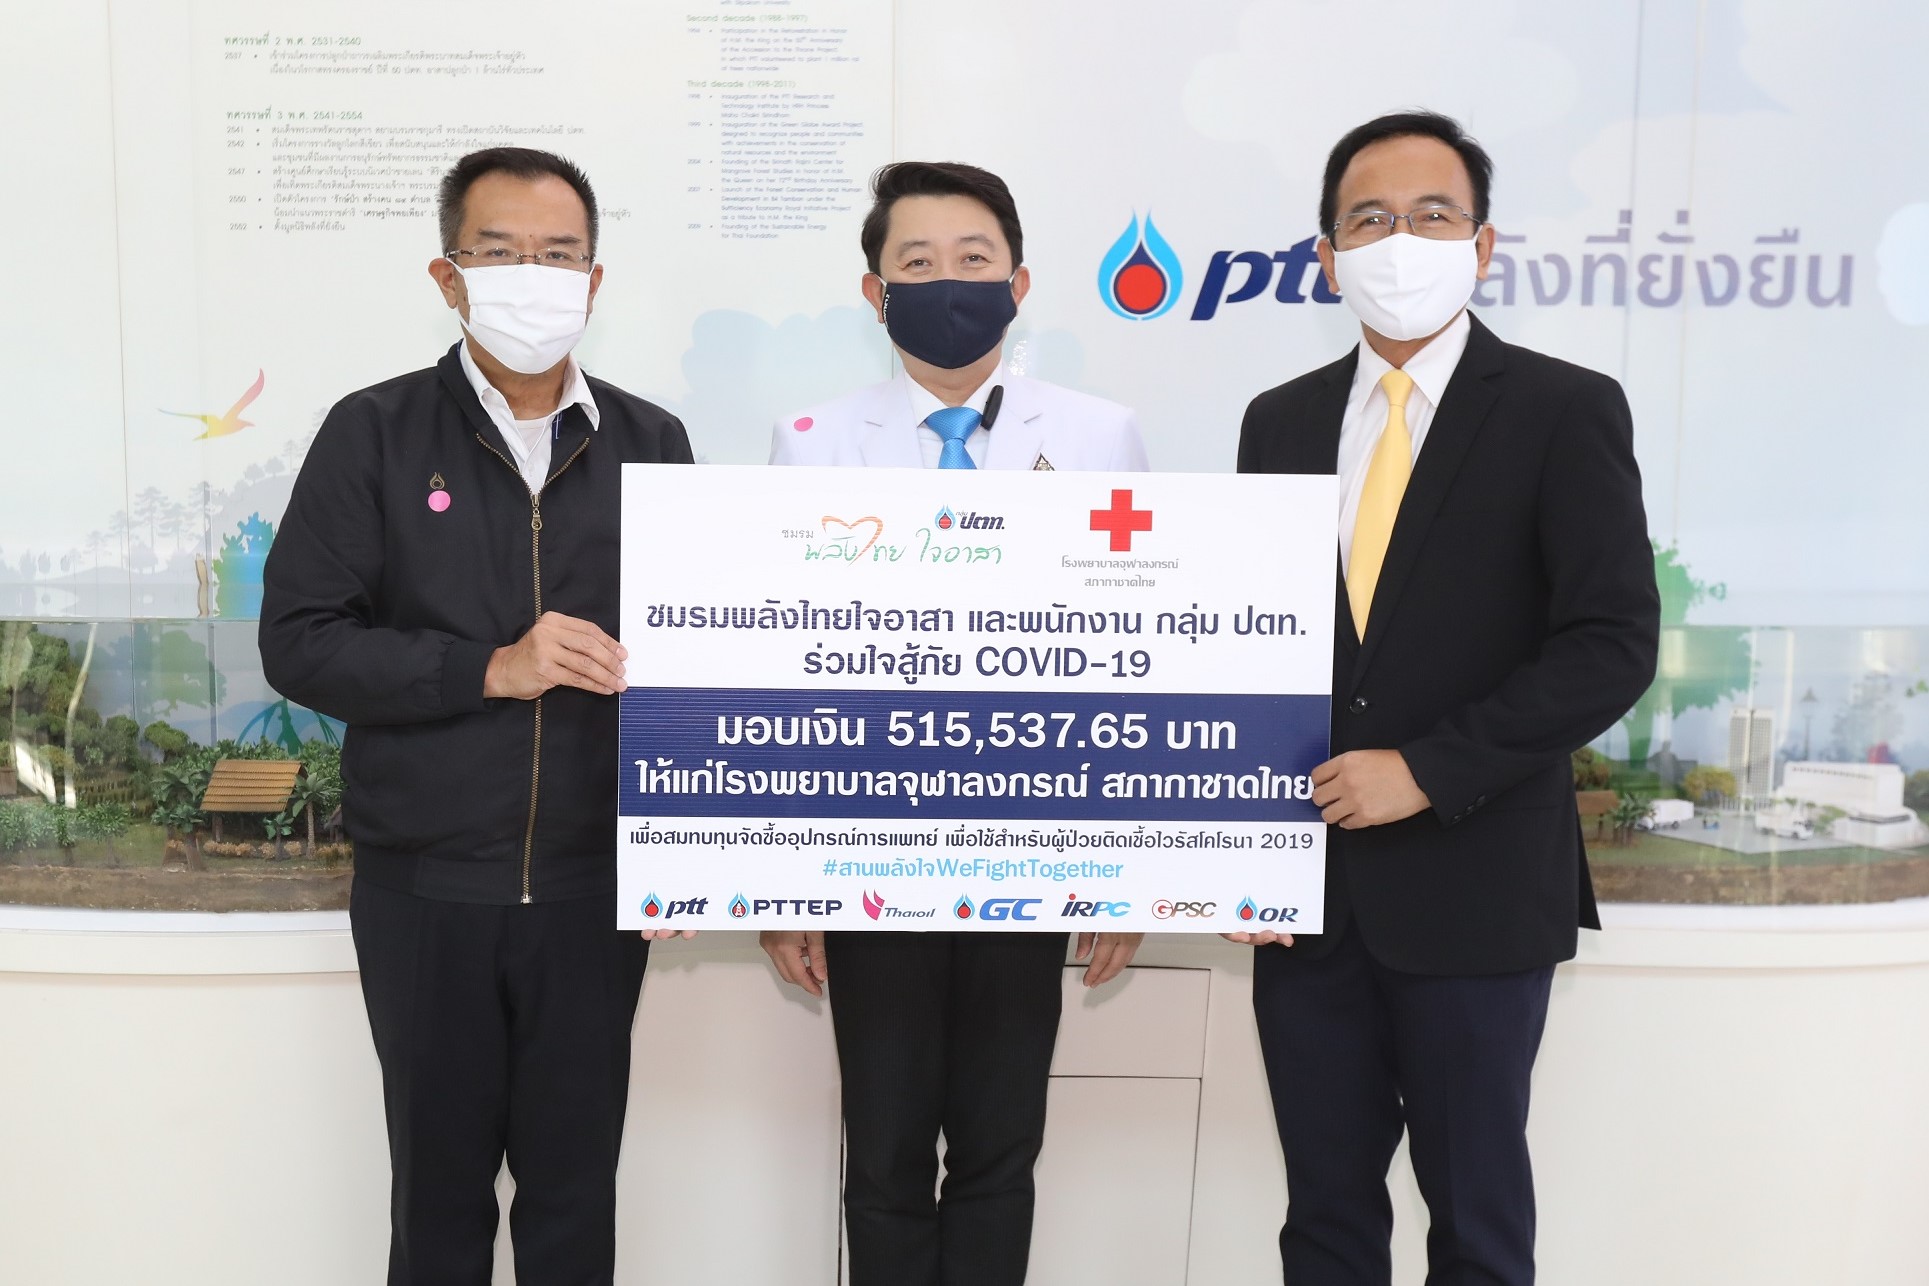 ภาพข่าว: ผู้บริหารและพนักงานกลุ่ม ปตท. สนับสนุนเงินบริจาคสู้ภัยโควิด-19 แก่ รพ.จุฬาลงกรณ์ สภากาชาดไทย